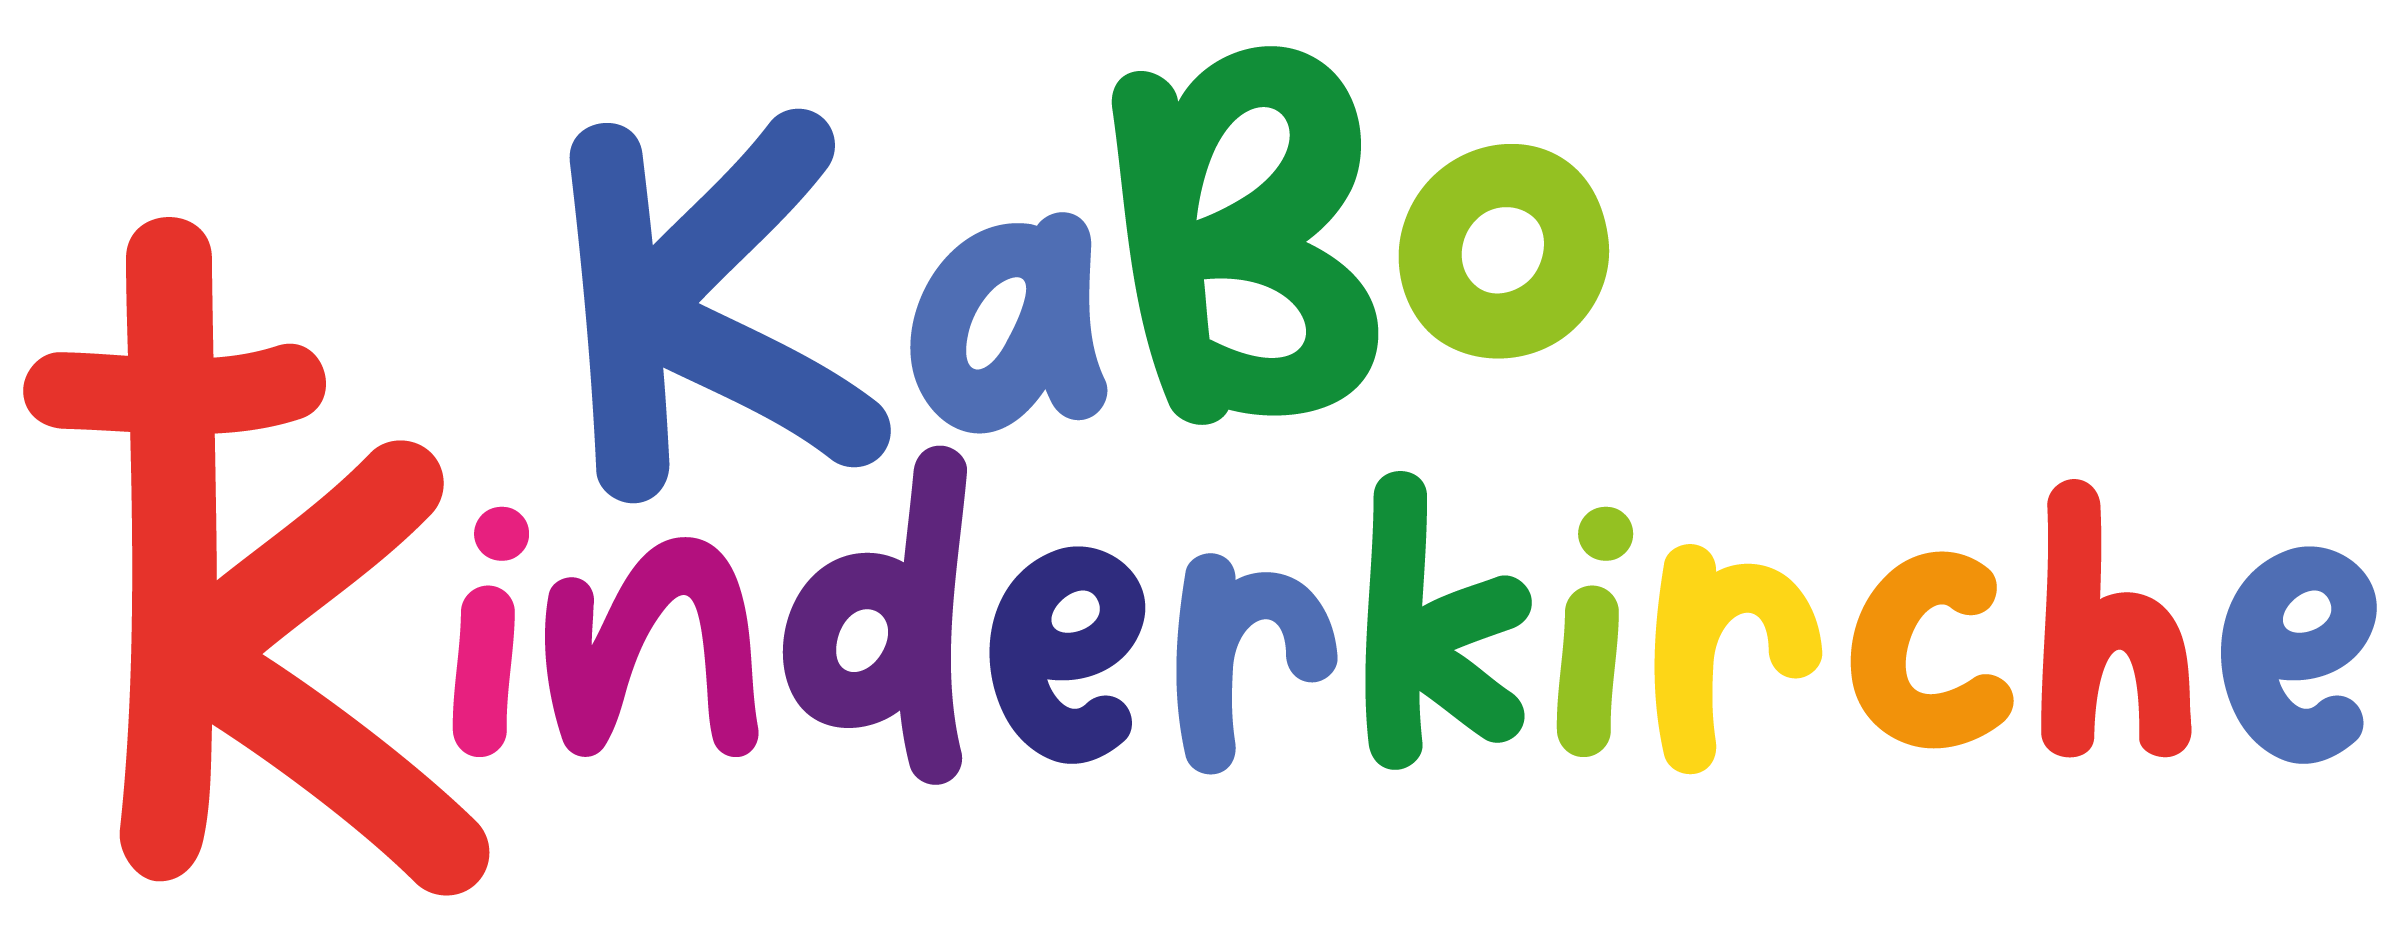 kabo_logo_nur_Schrift